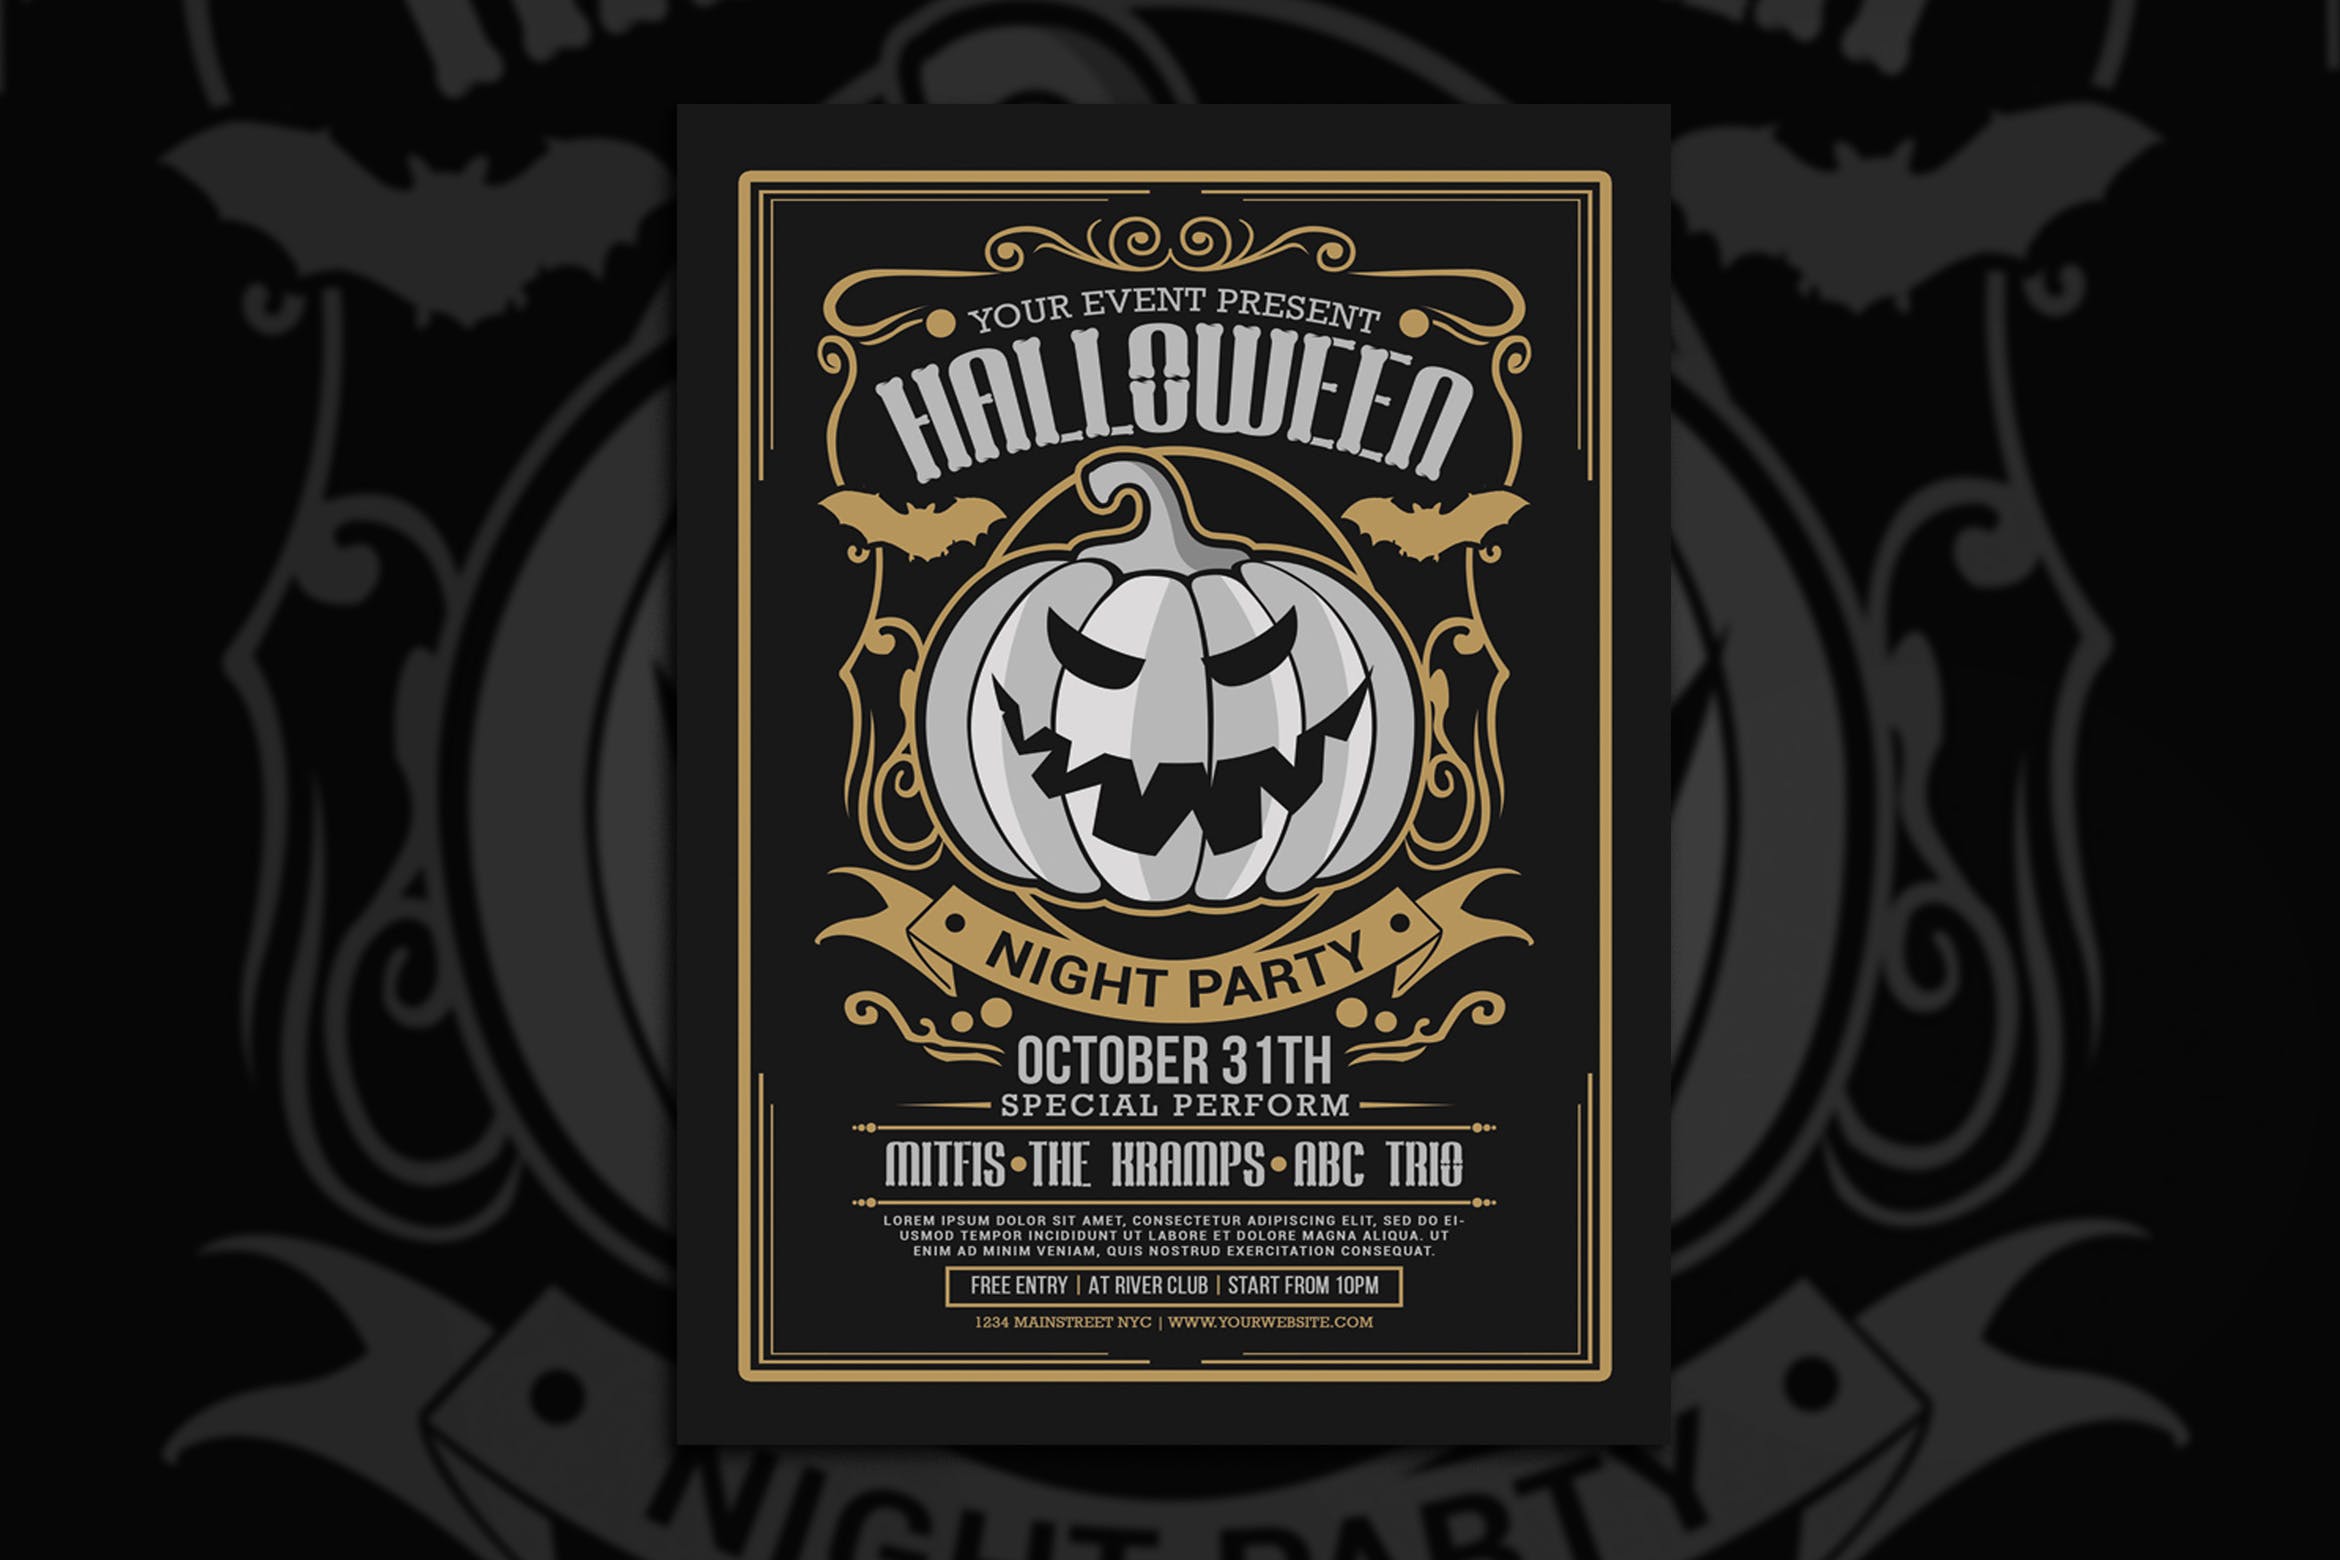 万圣节之夜主题活动海报设计模板 Halloween Night Party插图